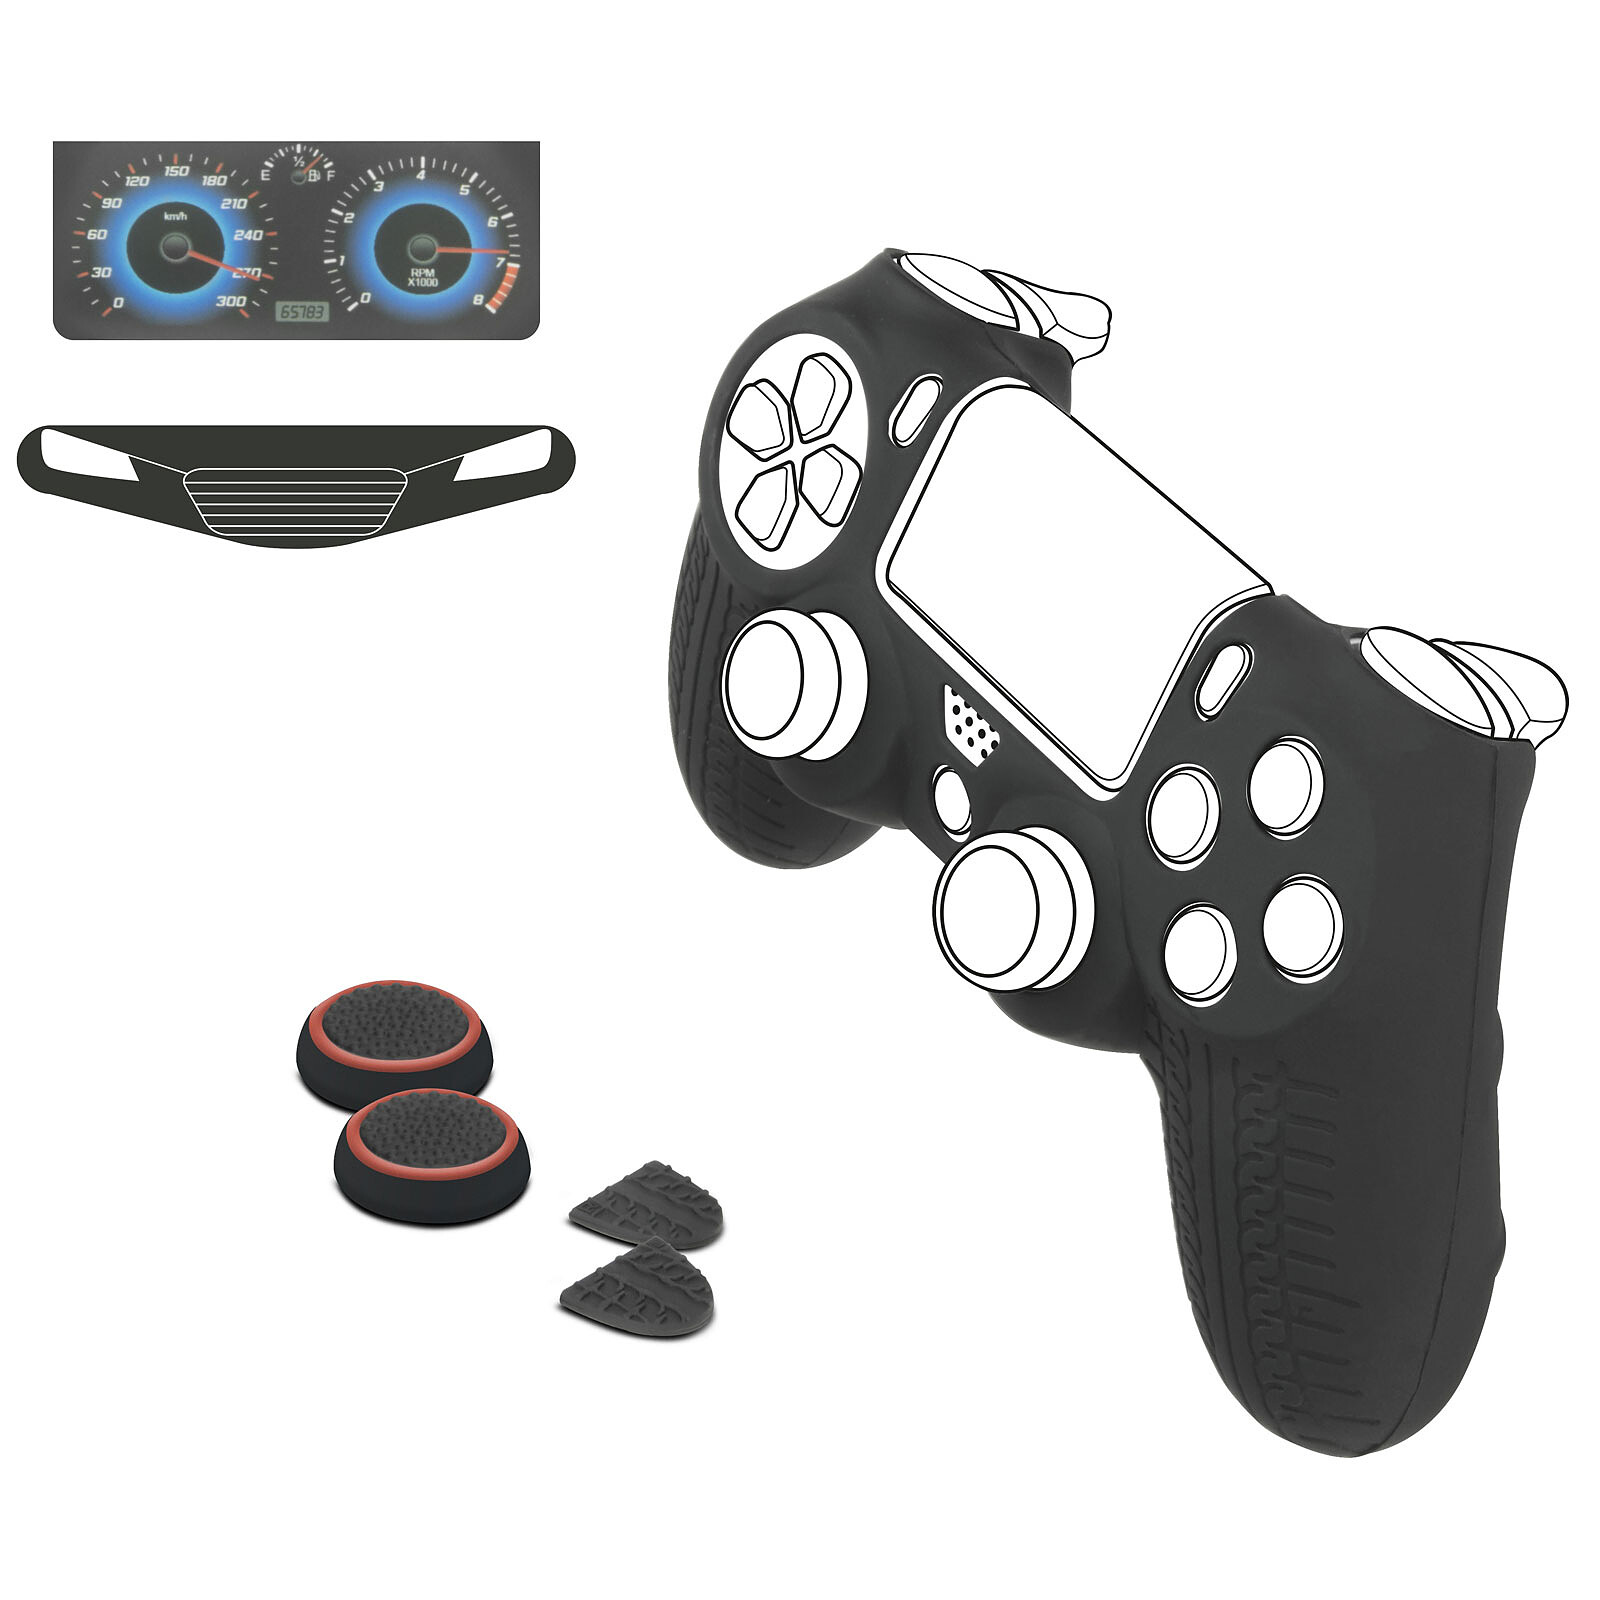 Subsonic Kit pour Manette PS4 - PSG - Accessoires PS4 - Garantie 3 ans LDLC